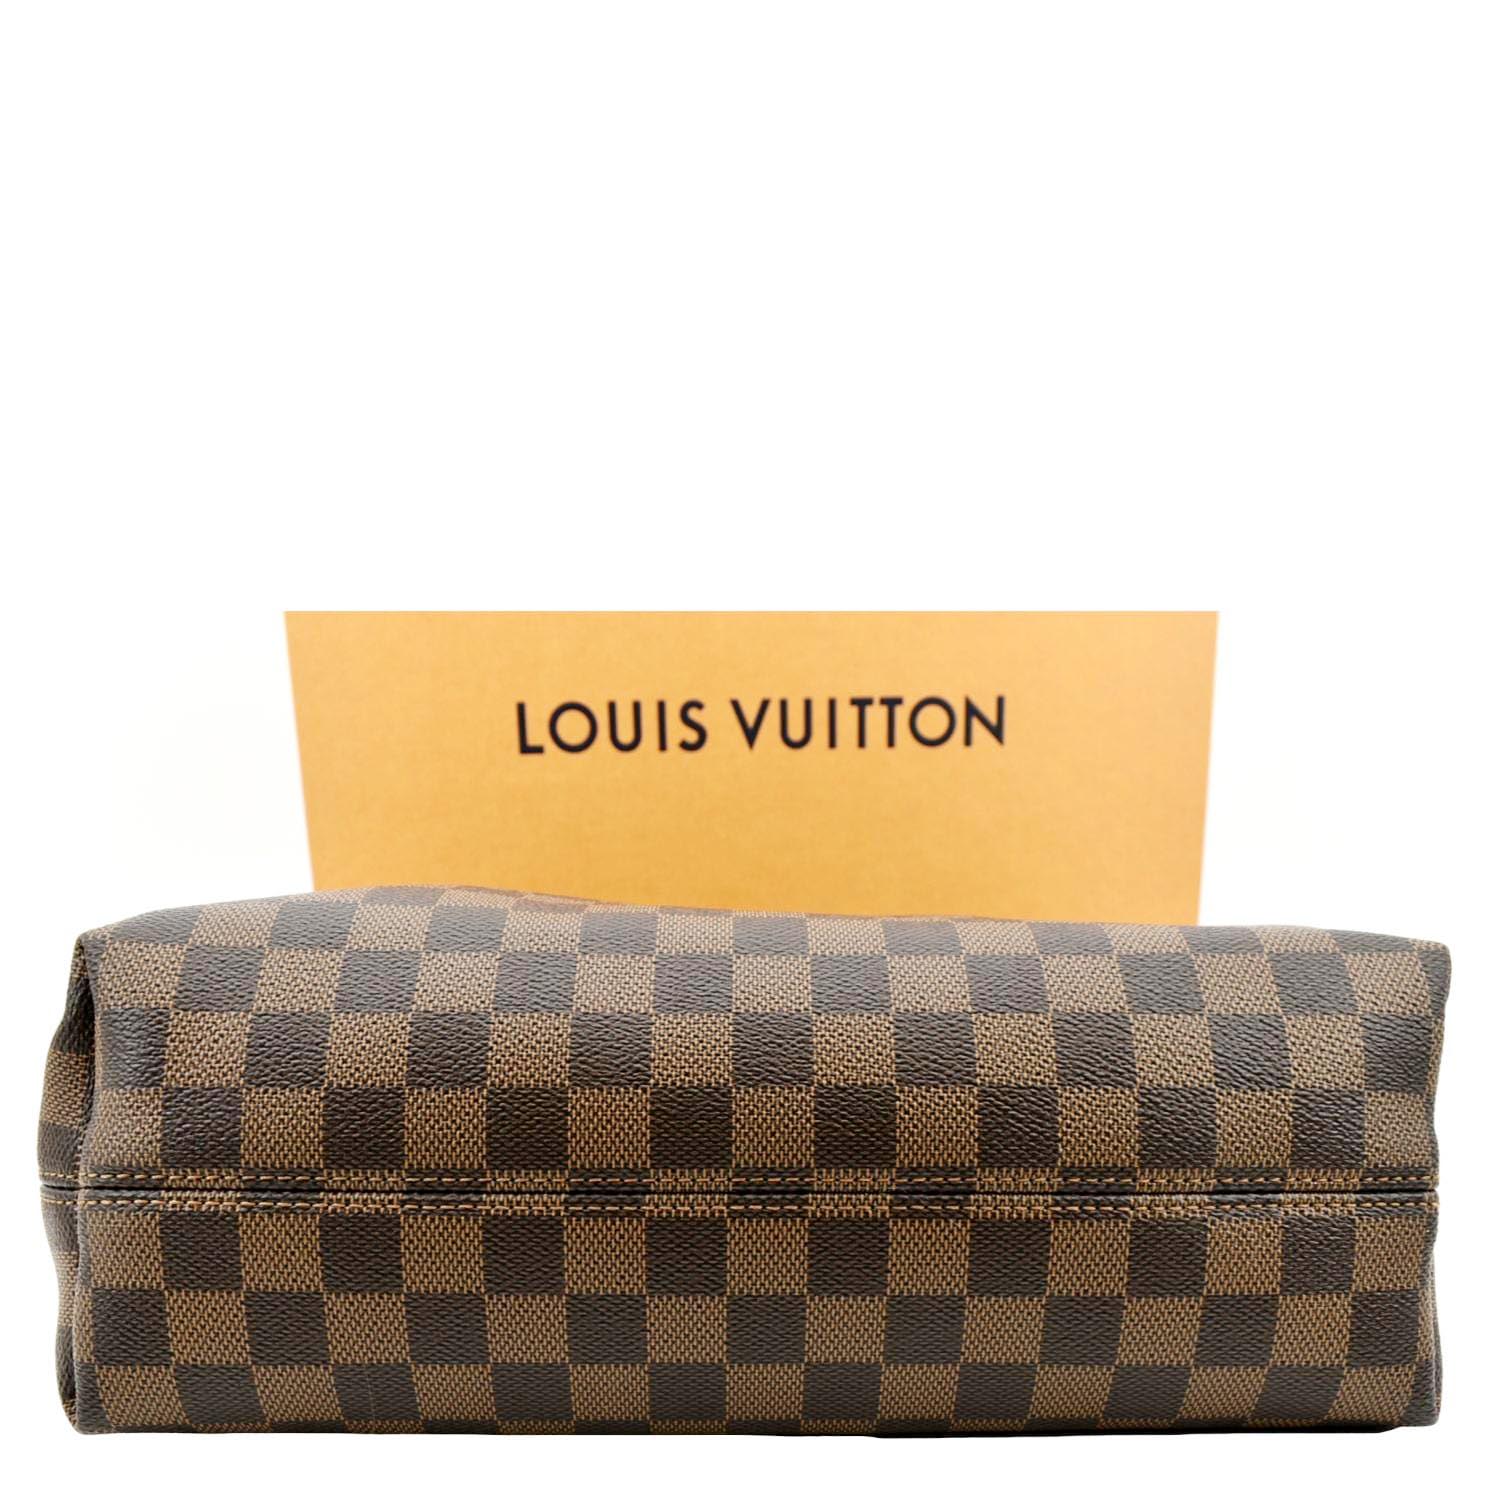 Louis Vuitton Graceful Pm N44044 Damier Ebene Canvas